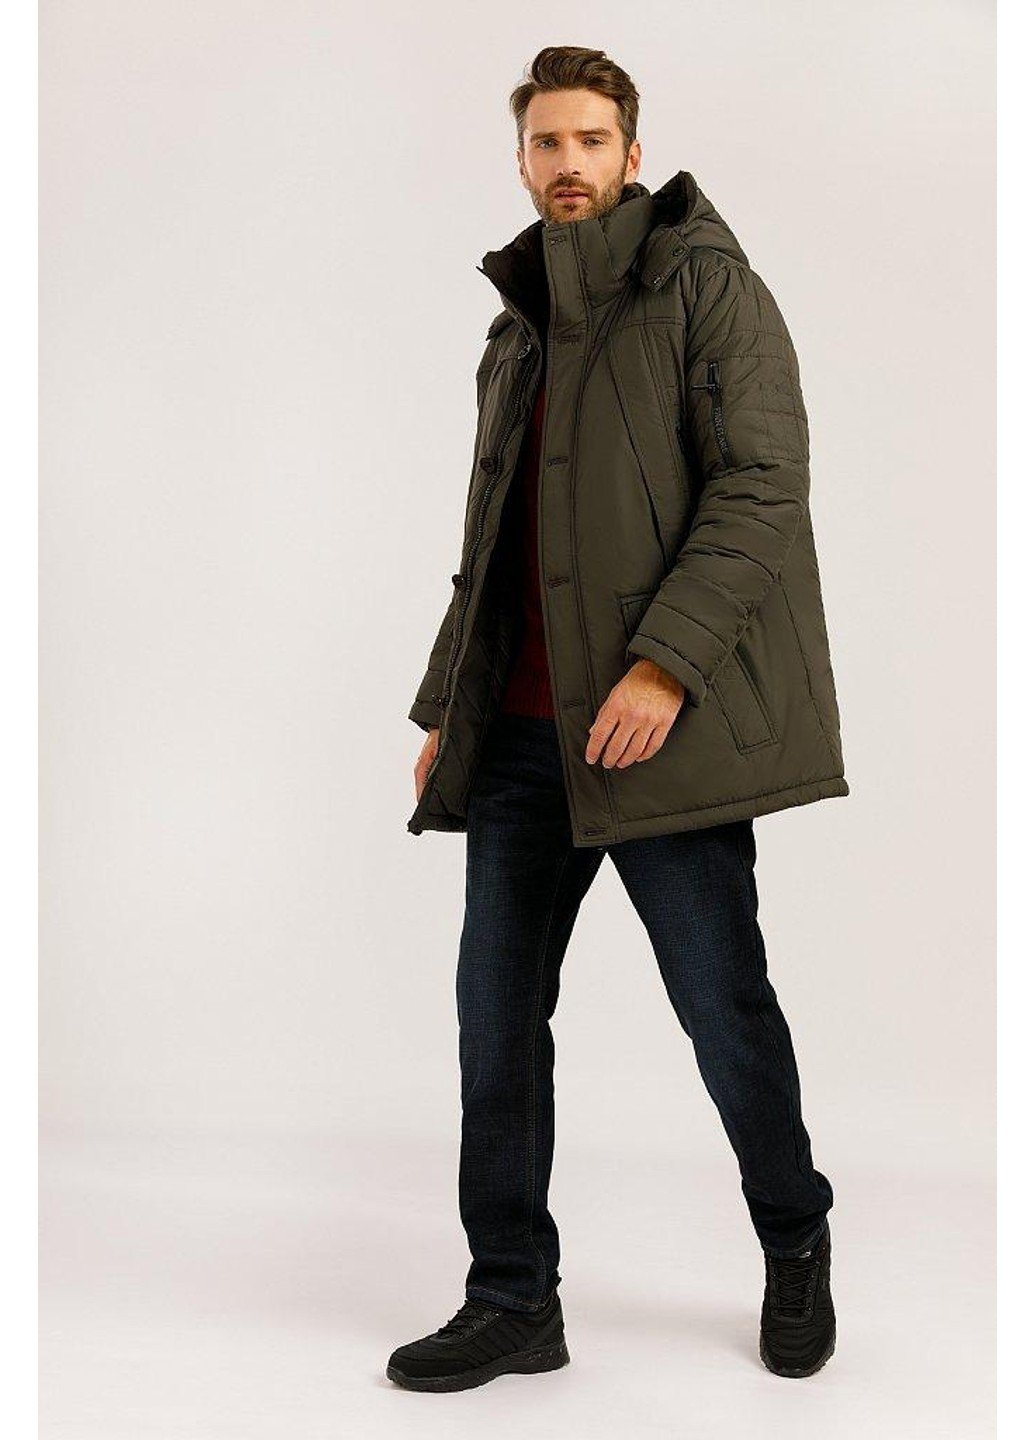 Коричневая зимняя зимняя куртка w19-42004-601 Finn Flare